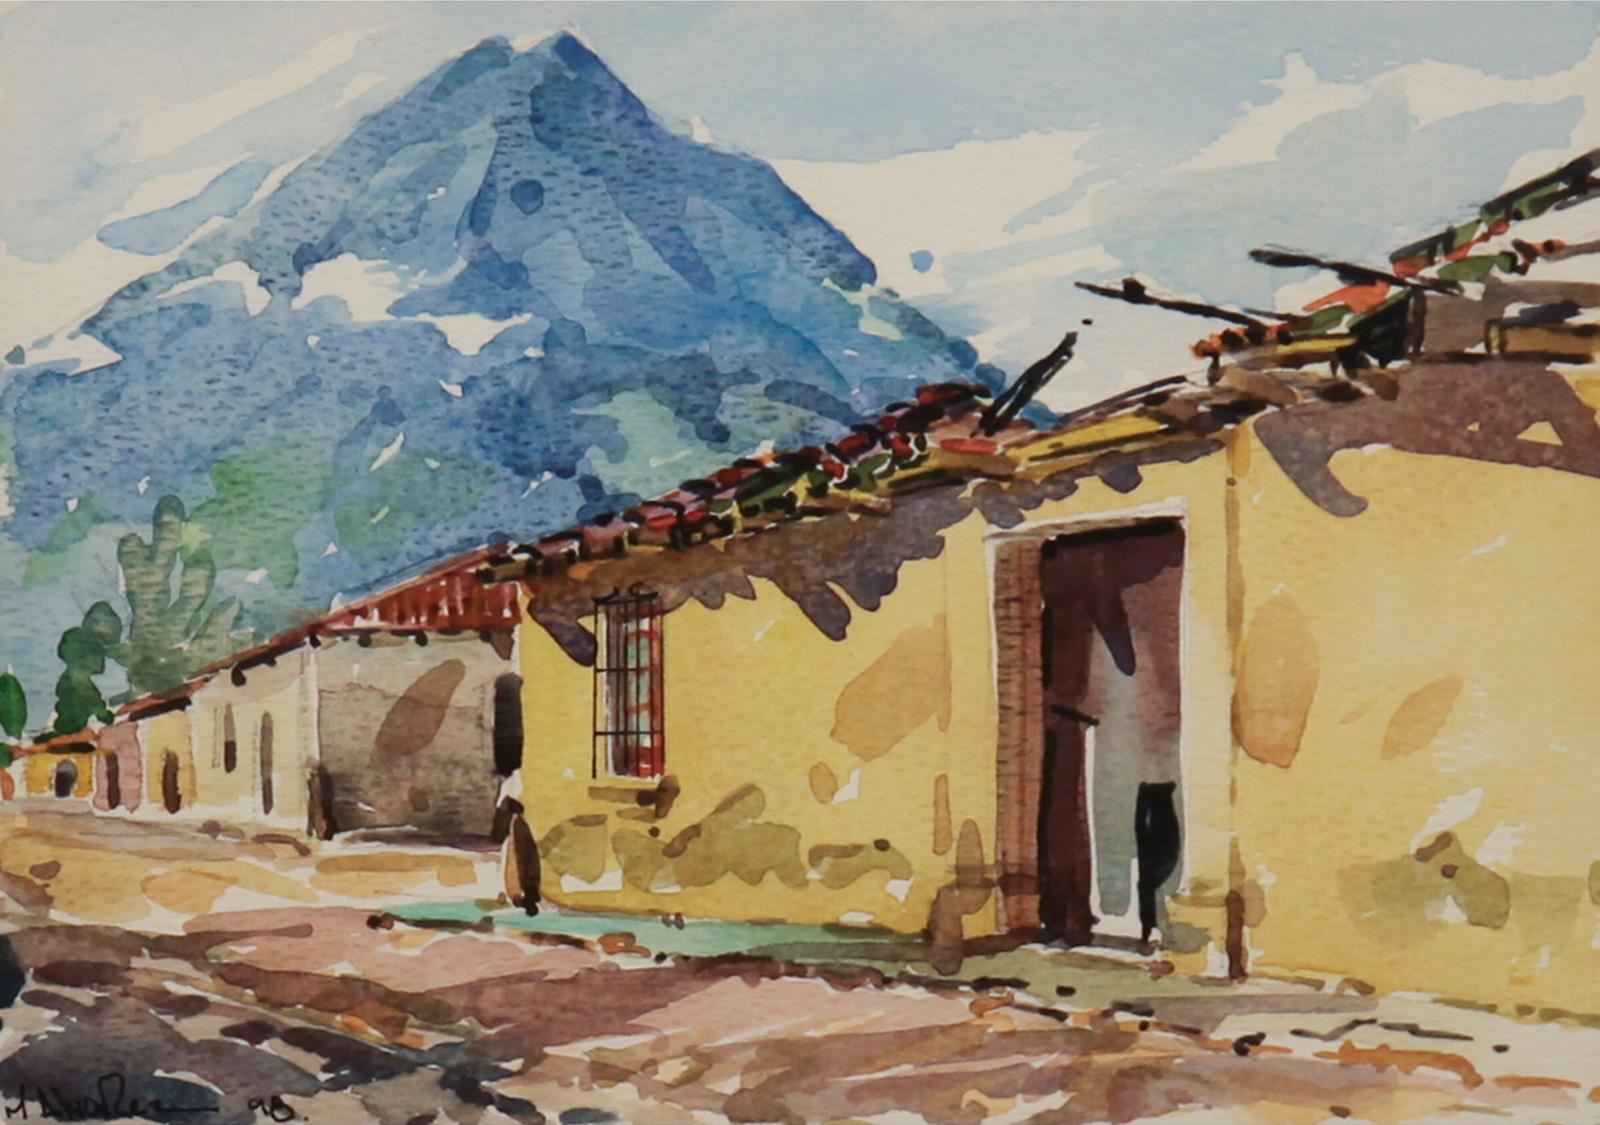 M. Alvarez - Antigua (Guatemala); Untitled, 1998